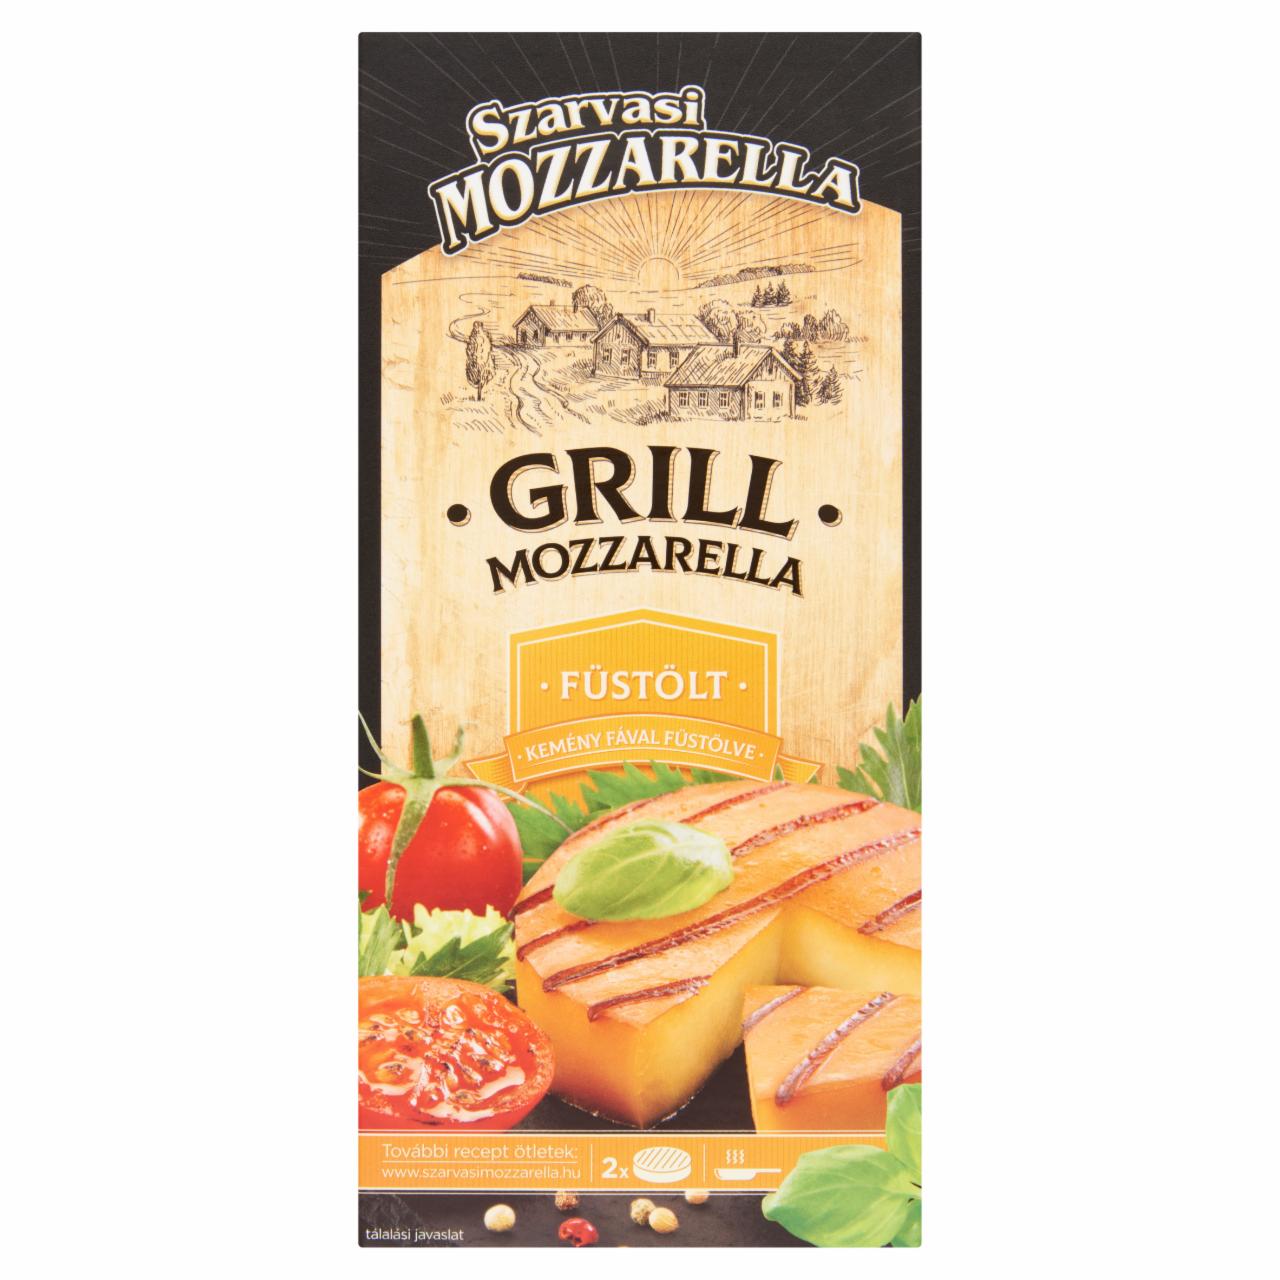 Képek - Szarvasi Mozzarella füstölt grill mozzarella 2 db 150 g